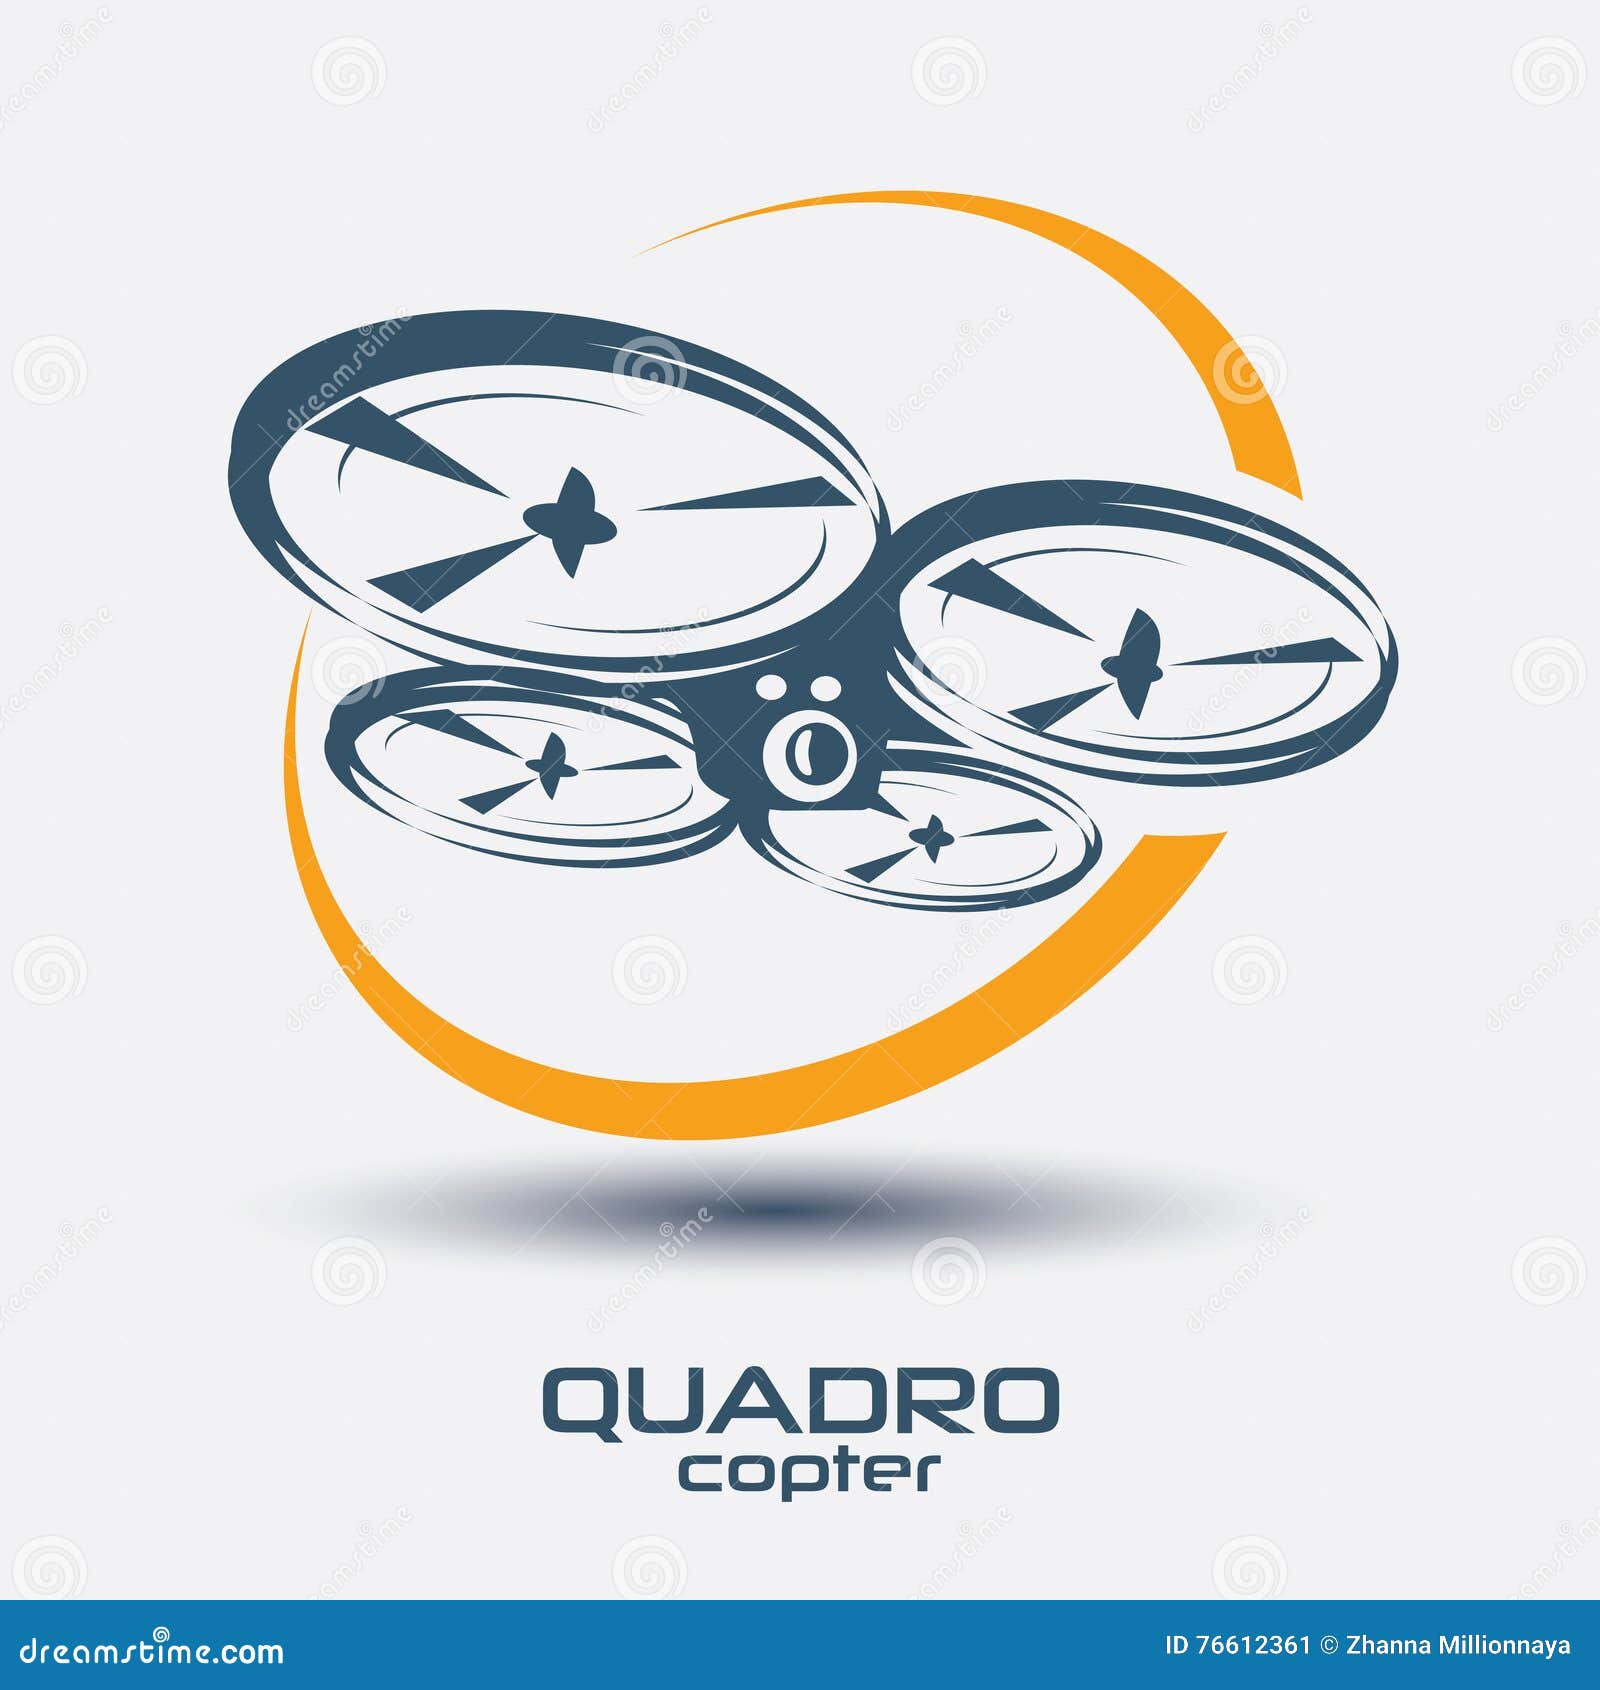 drone icon, quadrocopter